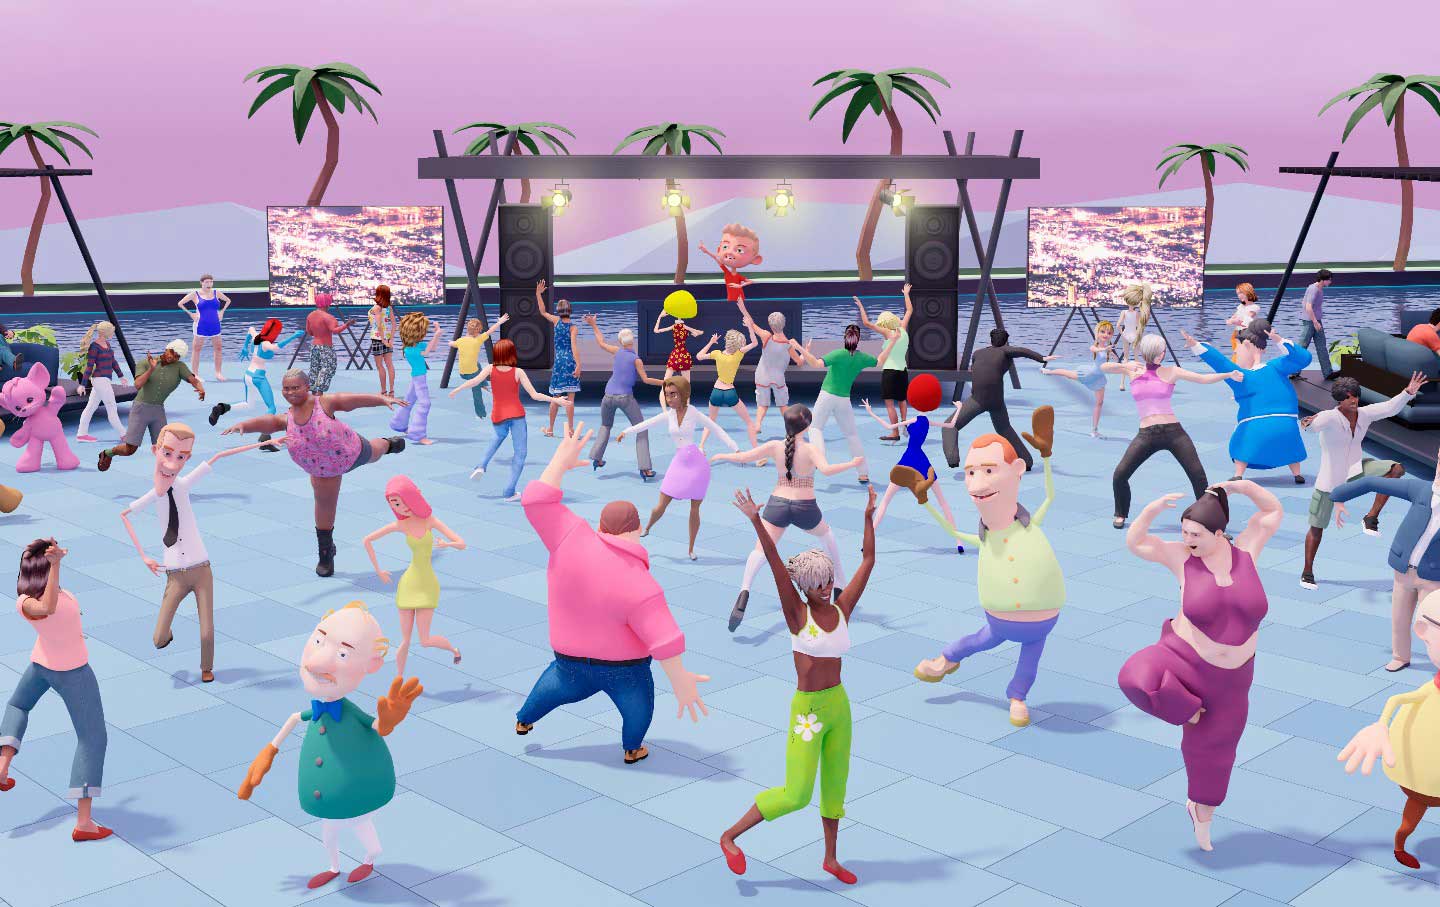 这是一张动画风格的图片，展示了多个卡通人物在户外举办派对，跳舞，享受音乐，背景是海边和晚霞。